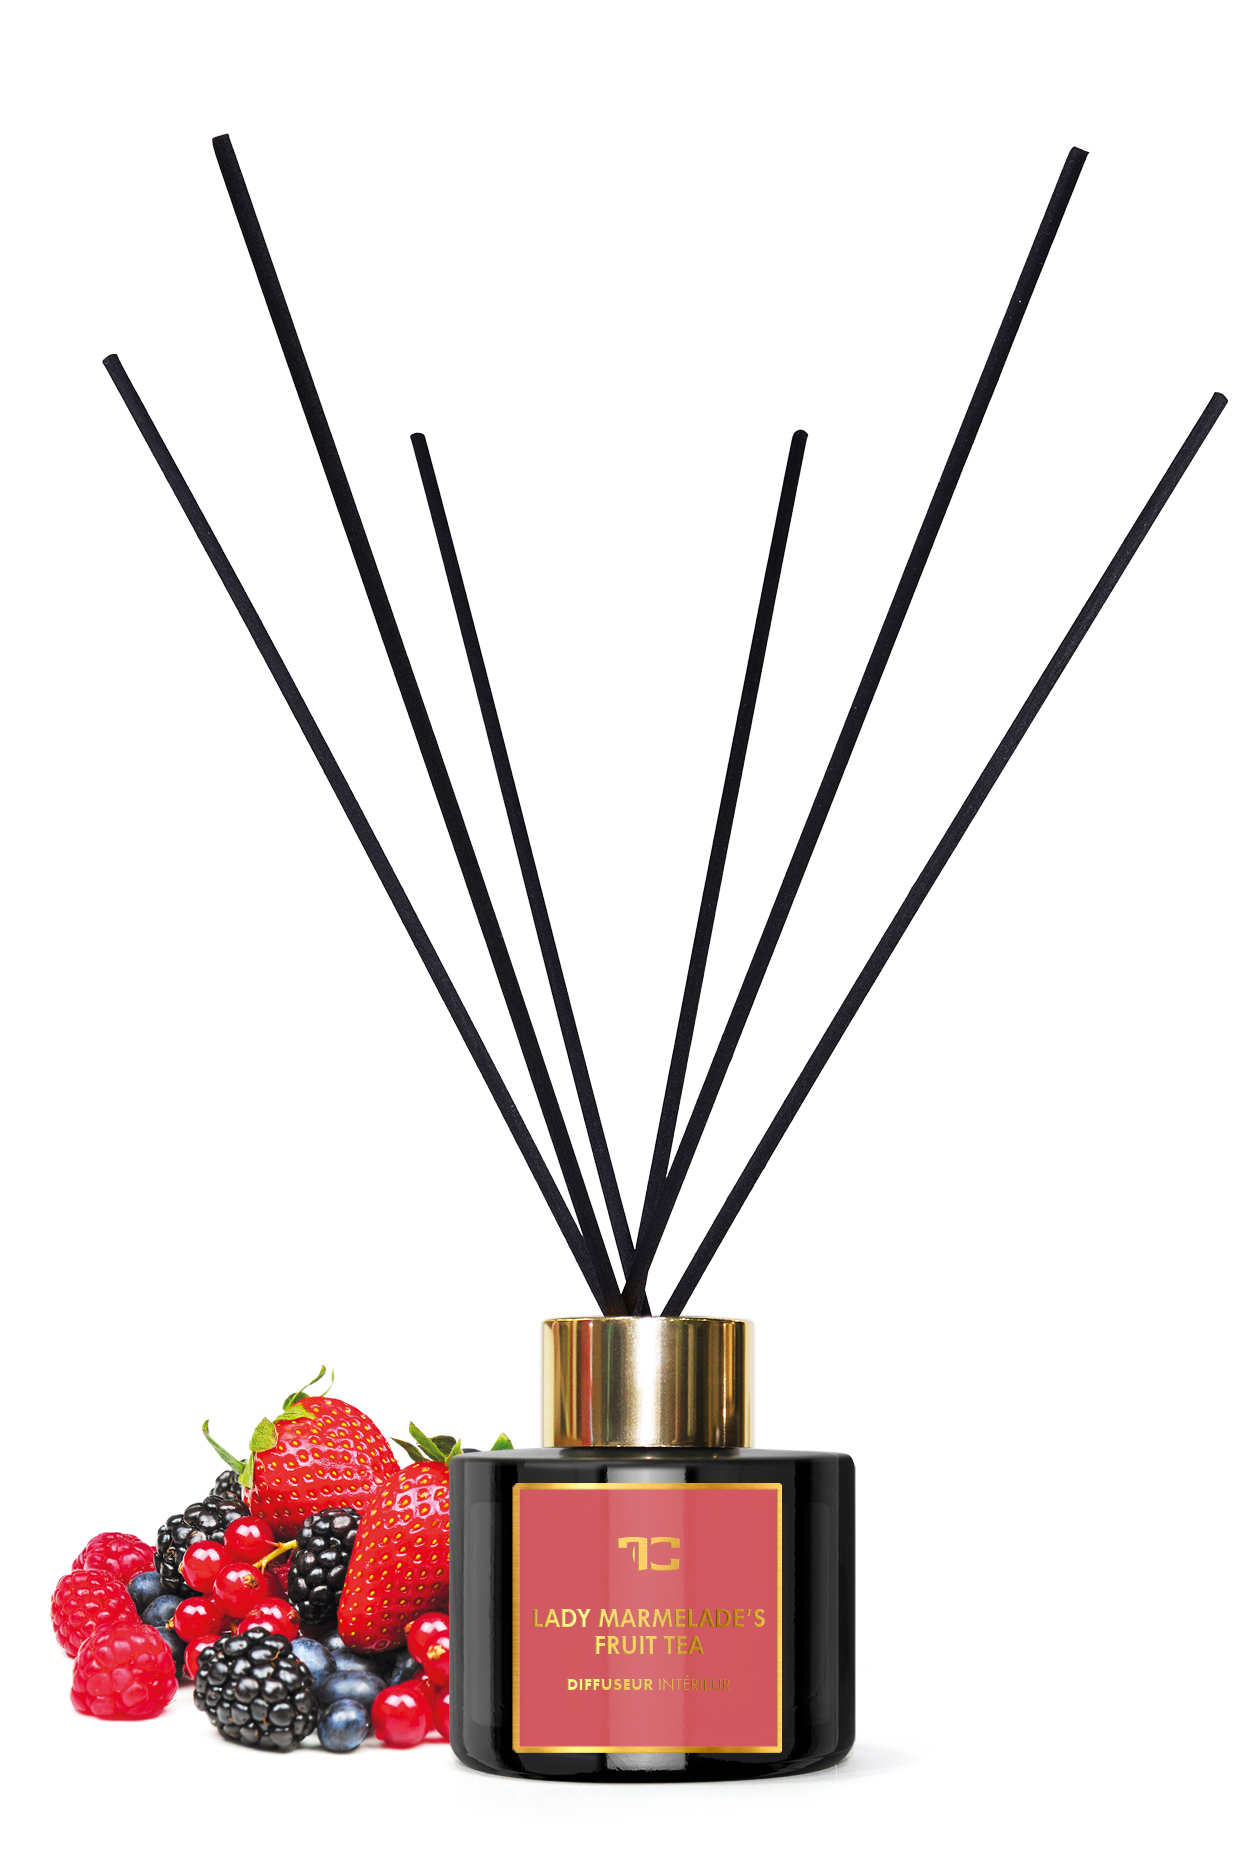 Interiérový tyčinkový bytový parfém 100 ml, Lady marmelade’s